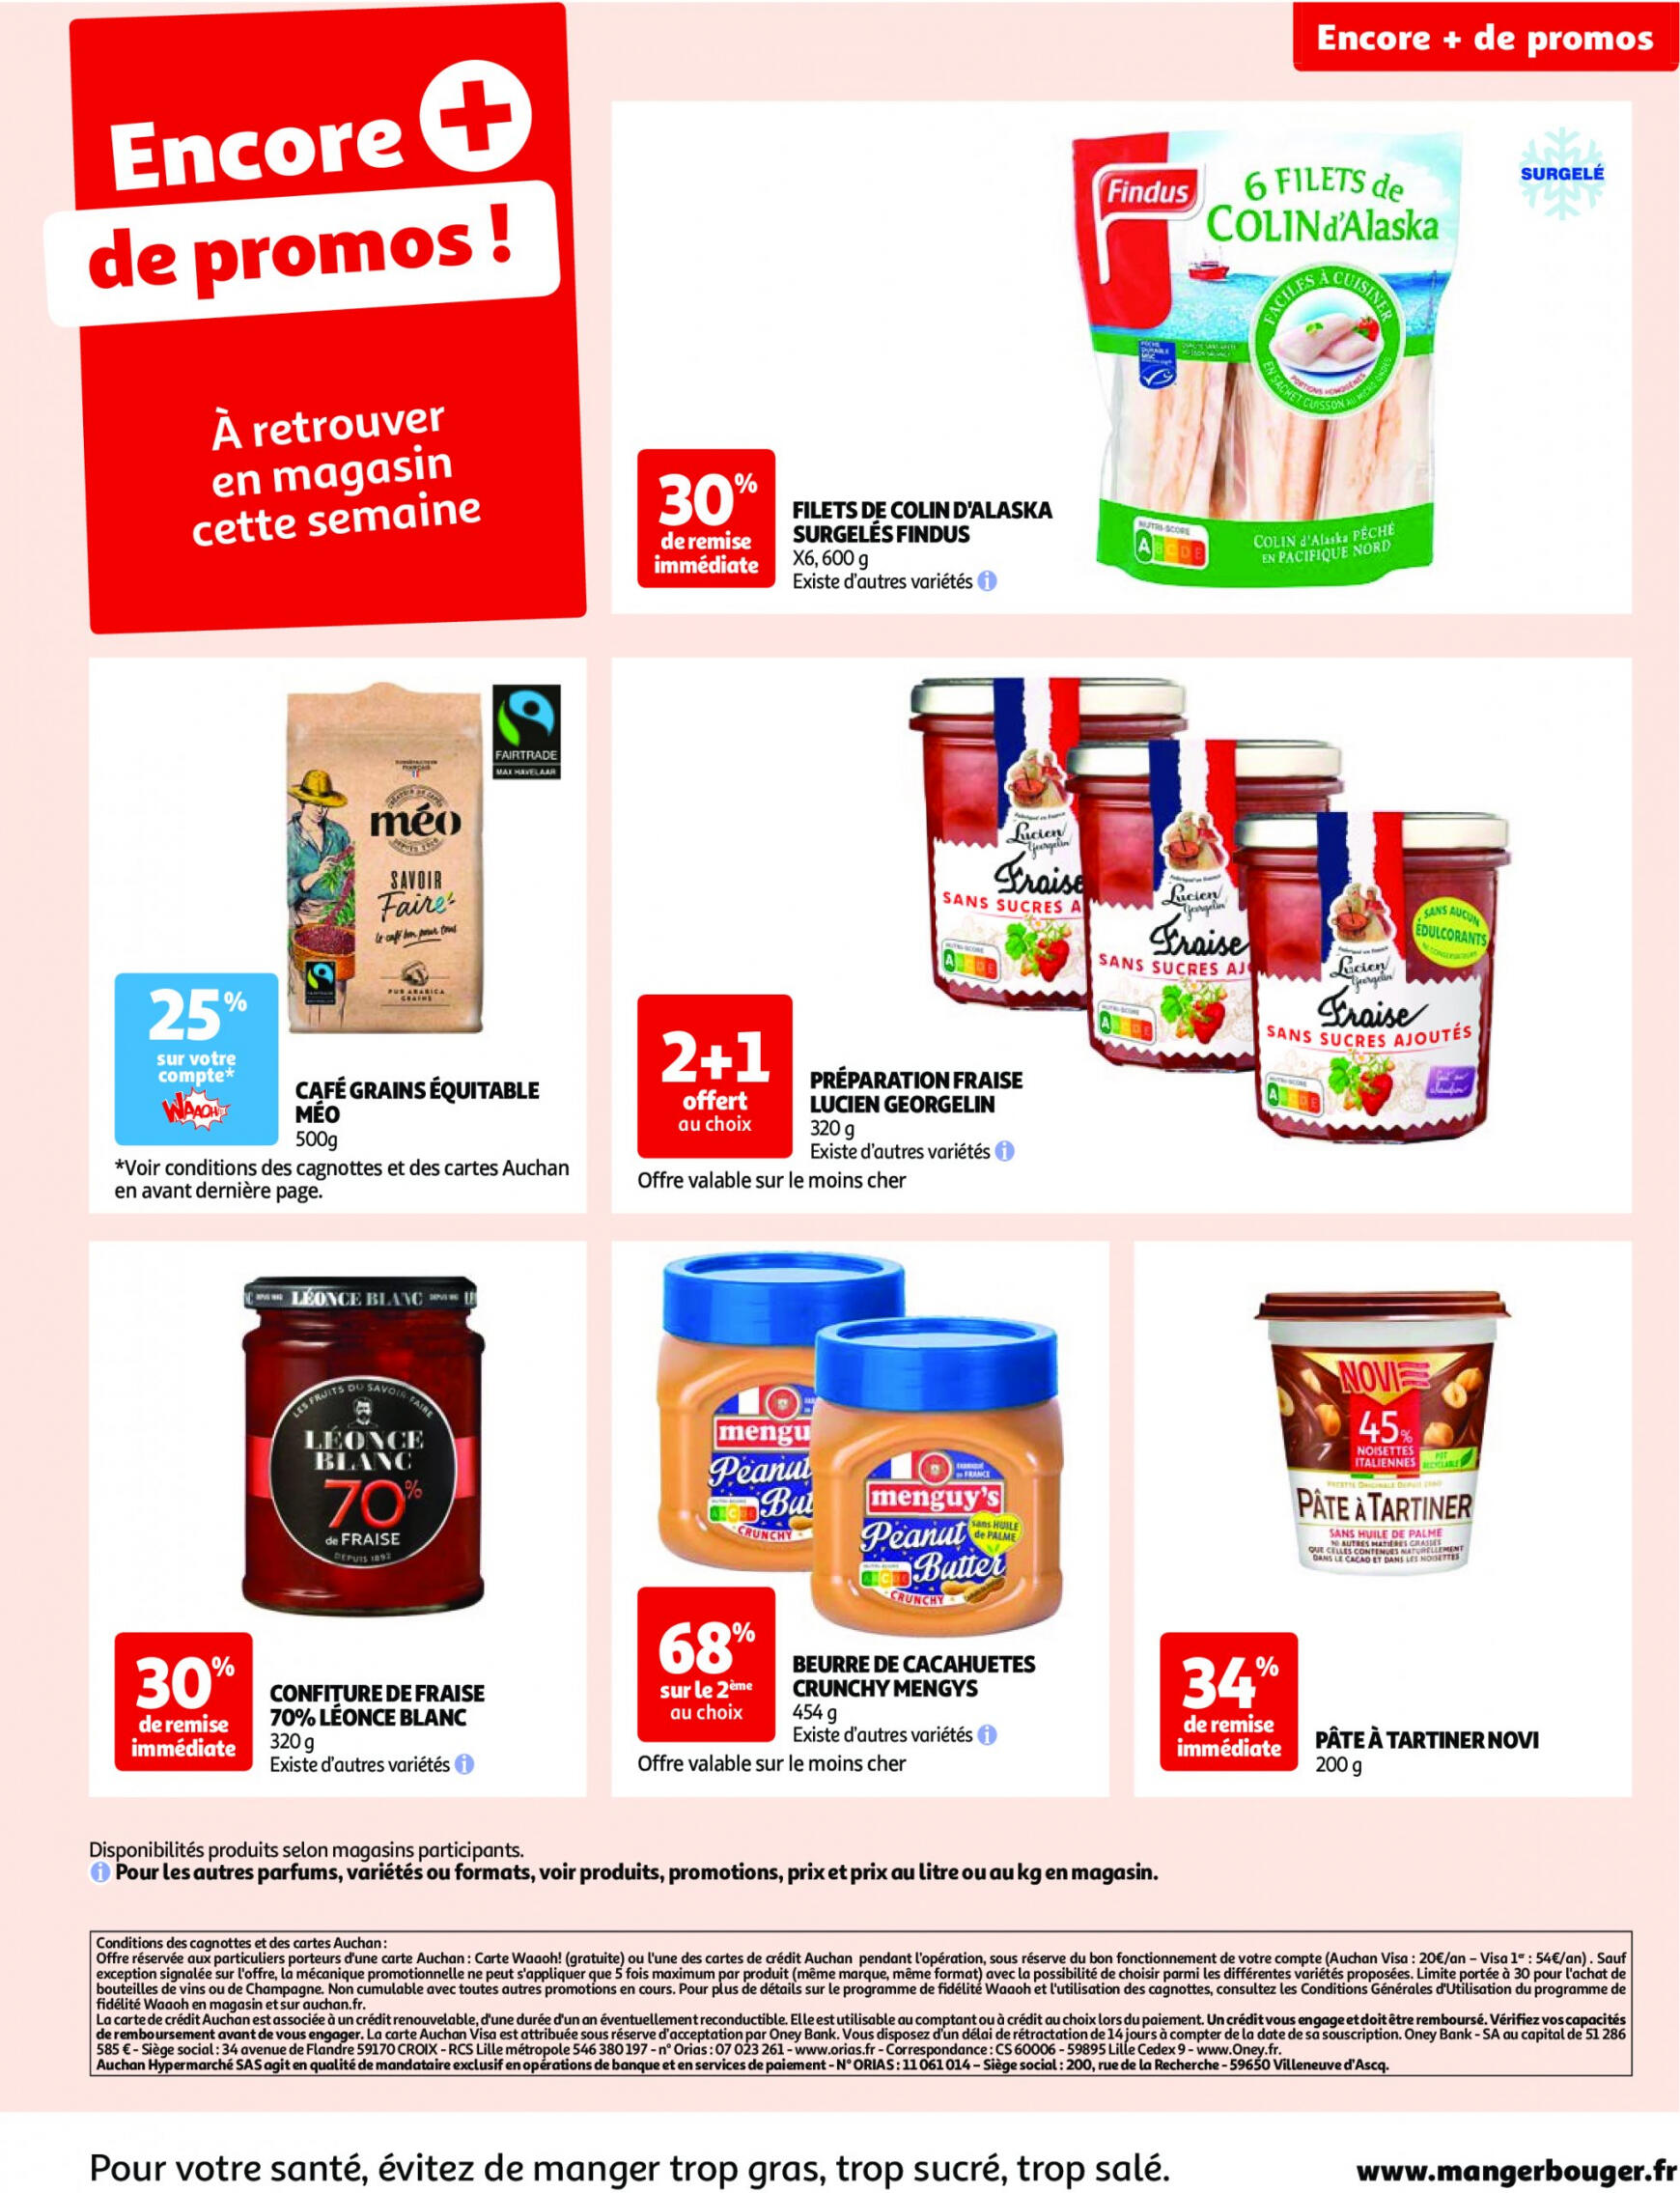 auchan - Prospectus Auchan actuel 14.05. - 21.05. - page: 56